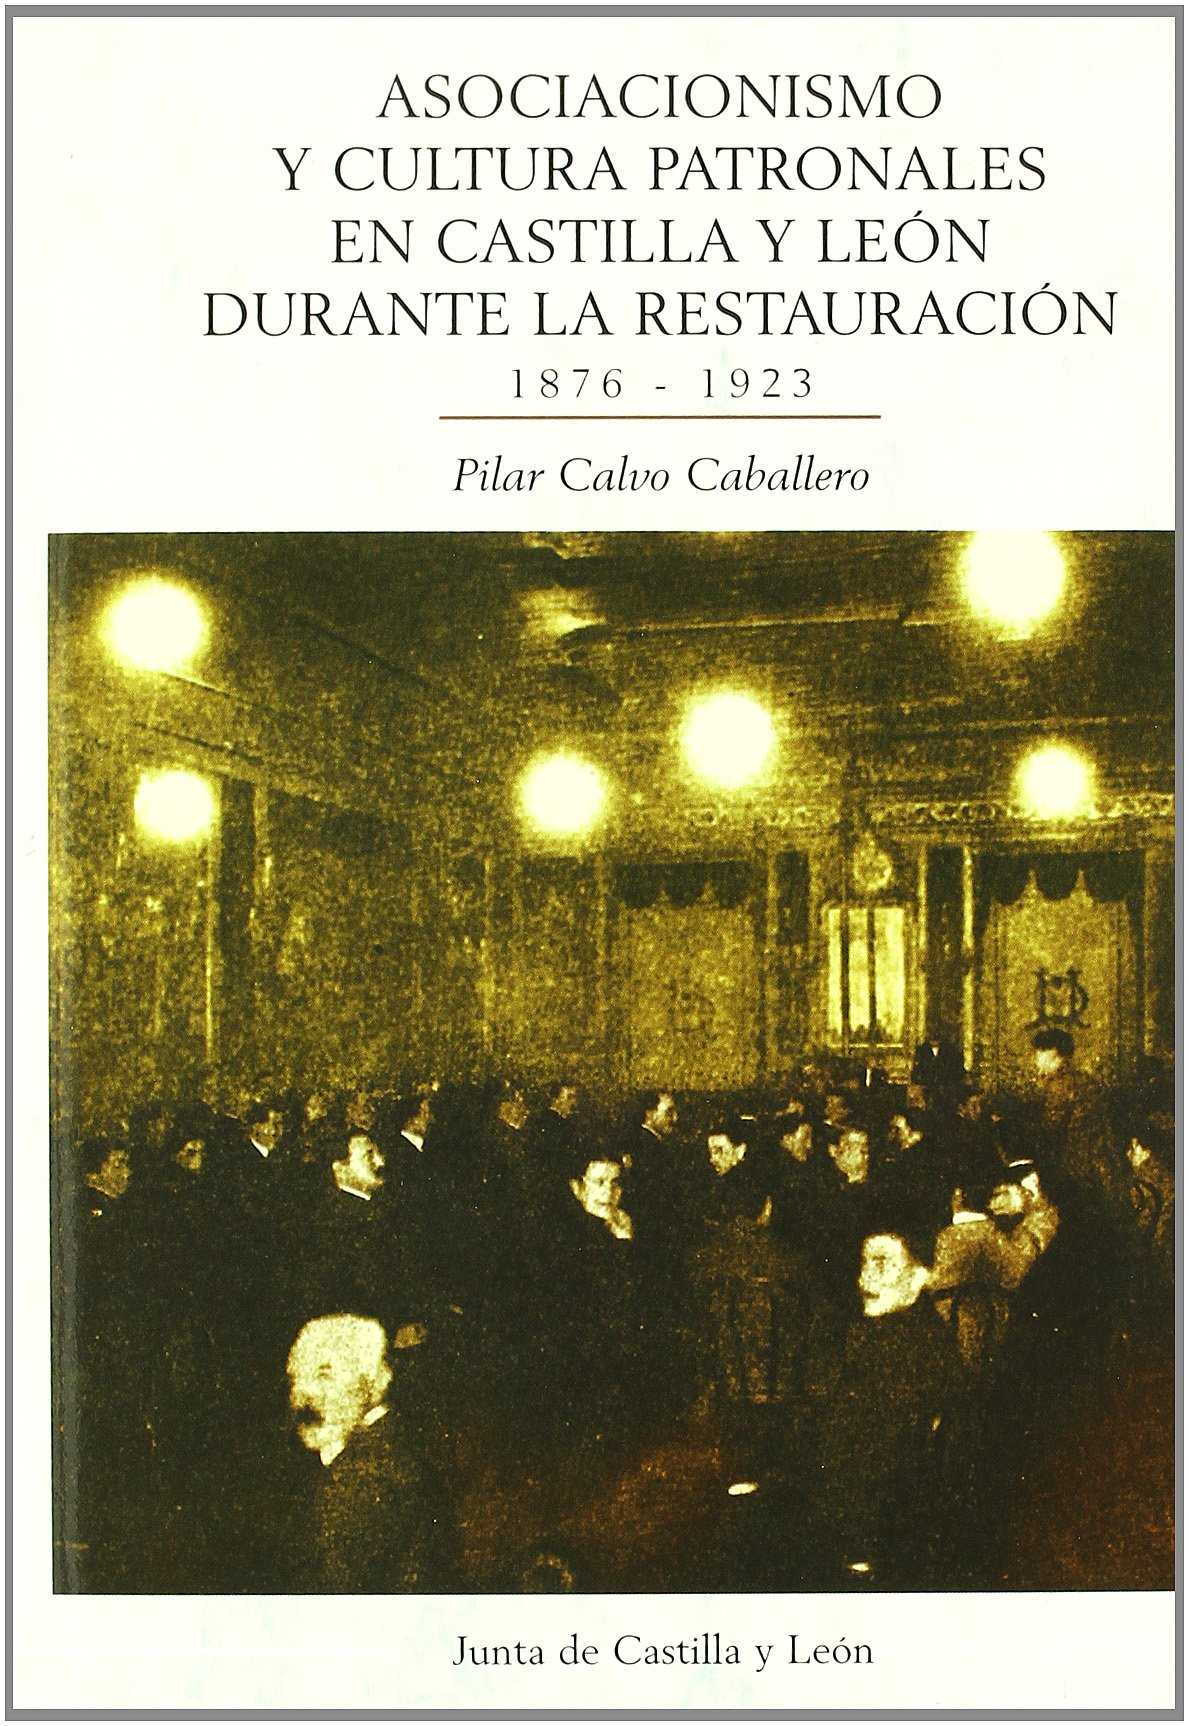 Asociacionismo y cultura patronales en Castilla y León durante la Restauración (1876-1923)